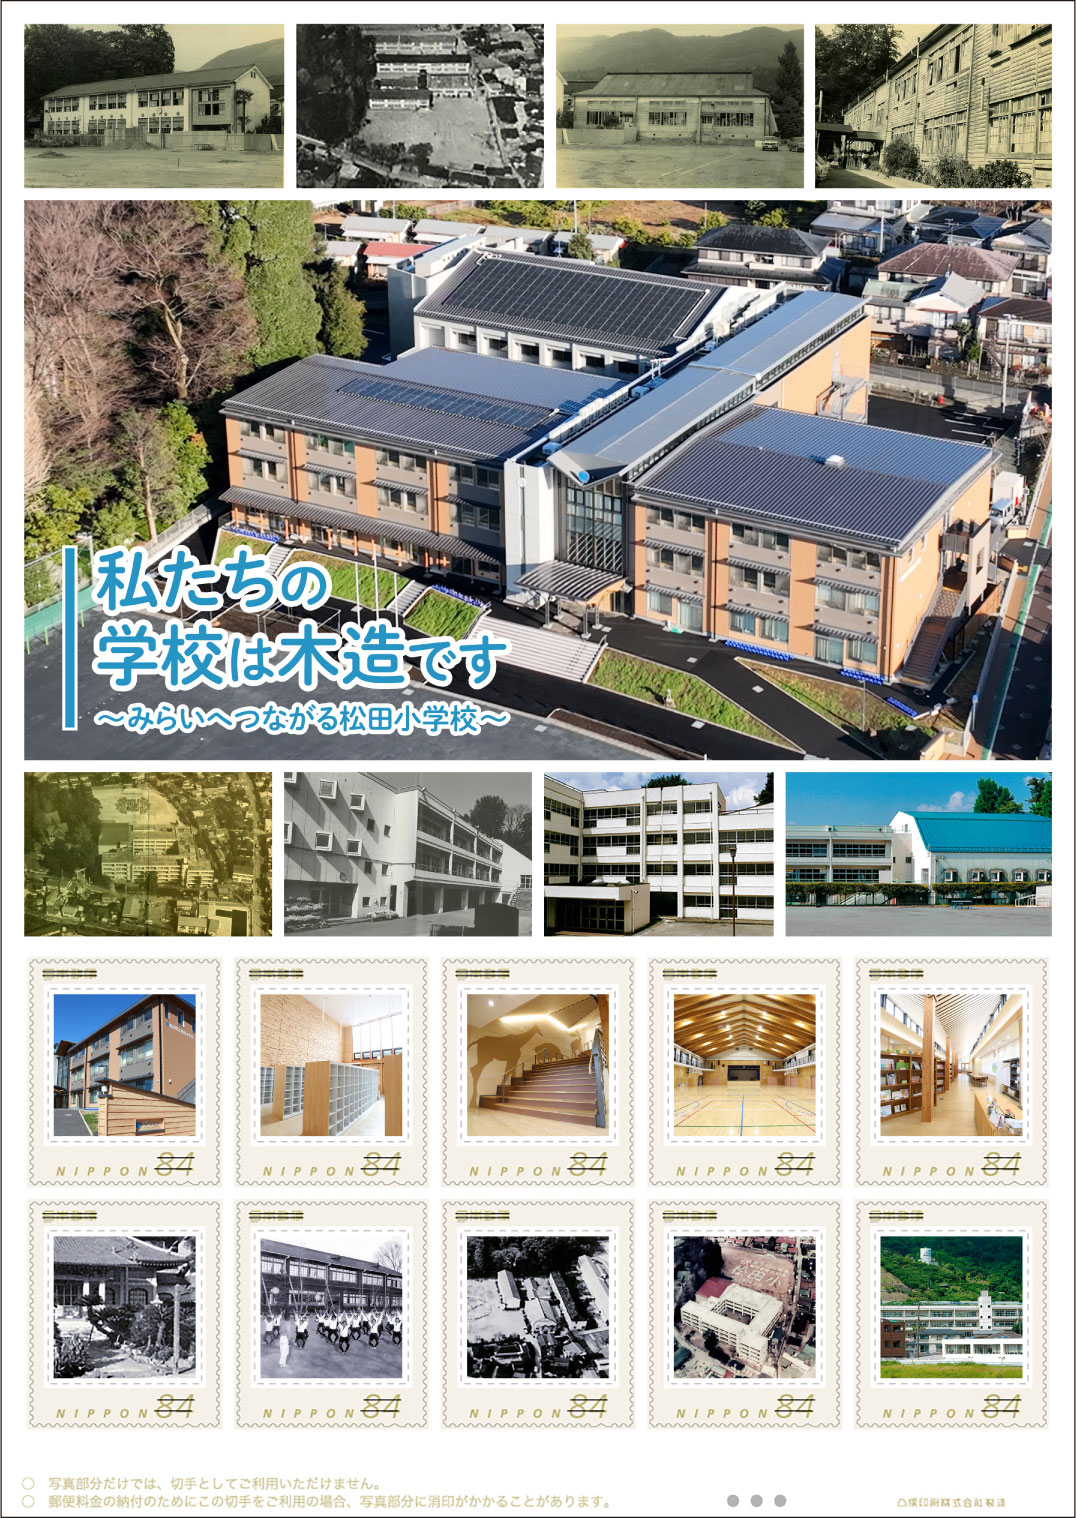 オリジナル フレーム切手「私たちの学校は木造です～みらいへつながる松田小学校～」の販売開始